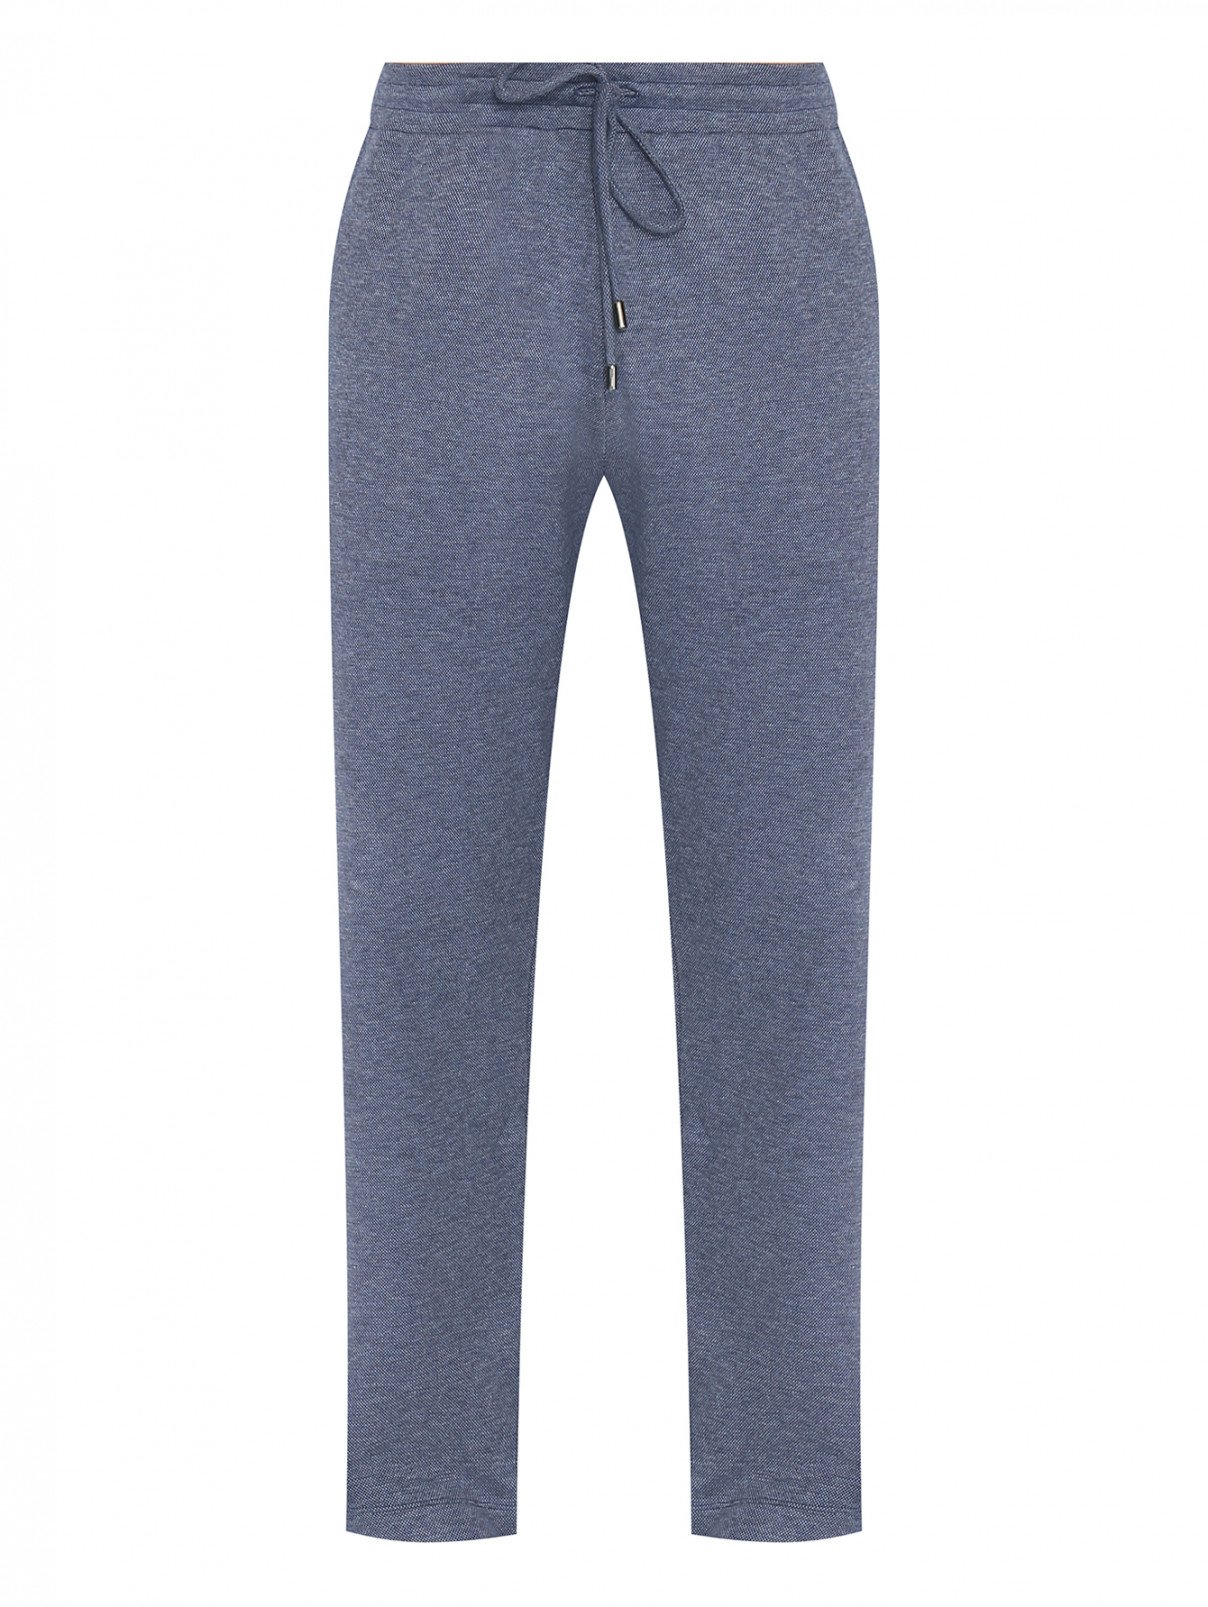 Трикотажные брюки на резинке Canali  –  Общий вид  – Цвет:  Синий